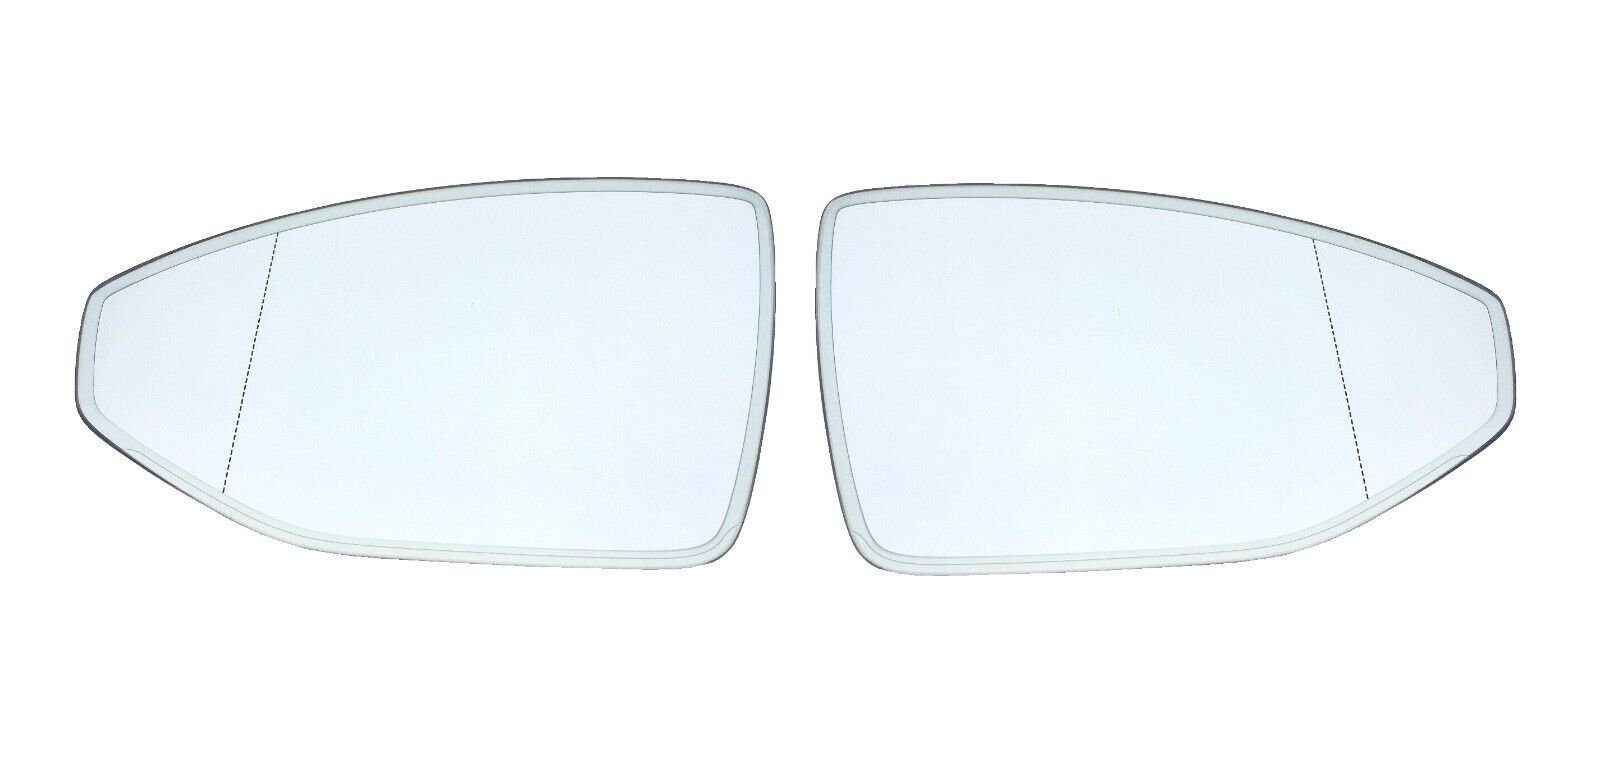 Außenspiegelglas (Spiegelglas) für AUDI A5 rechts und links